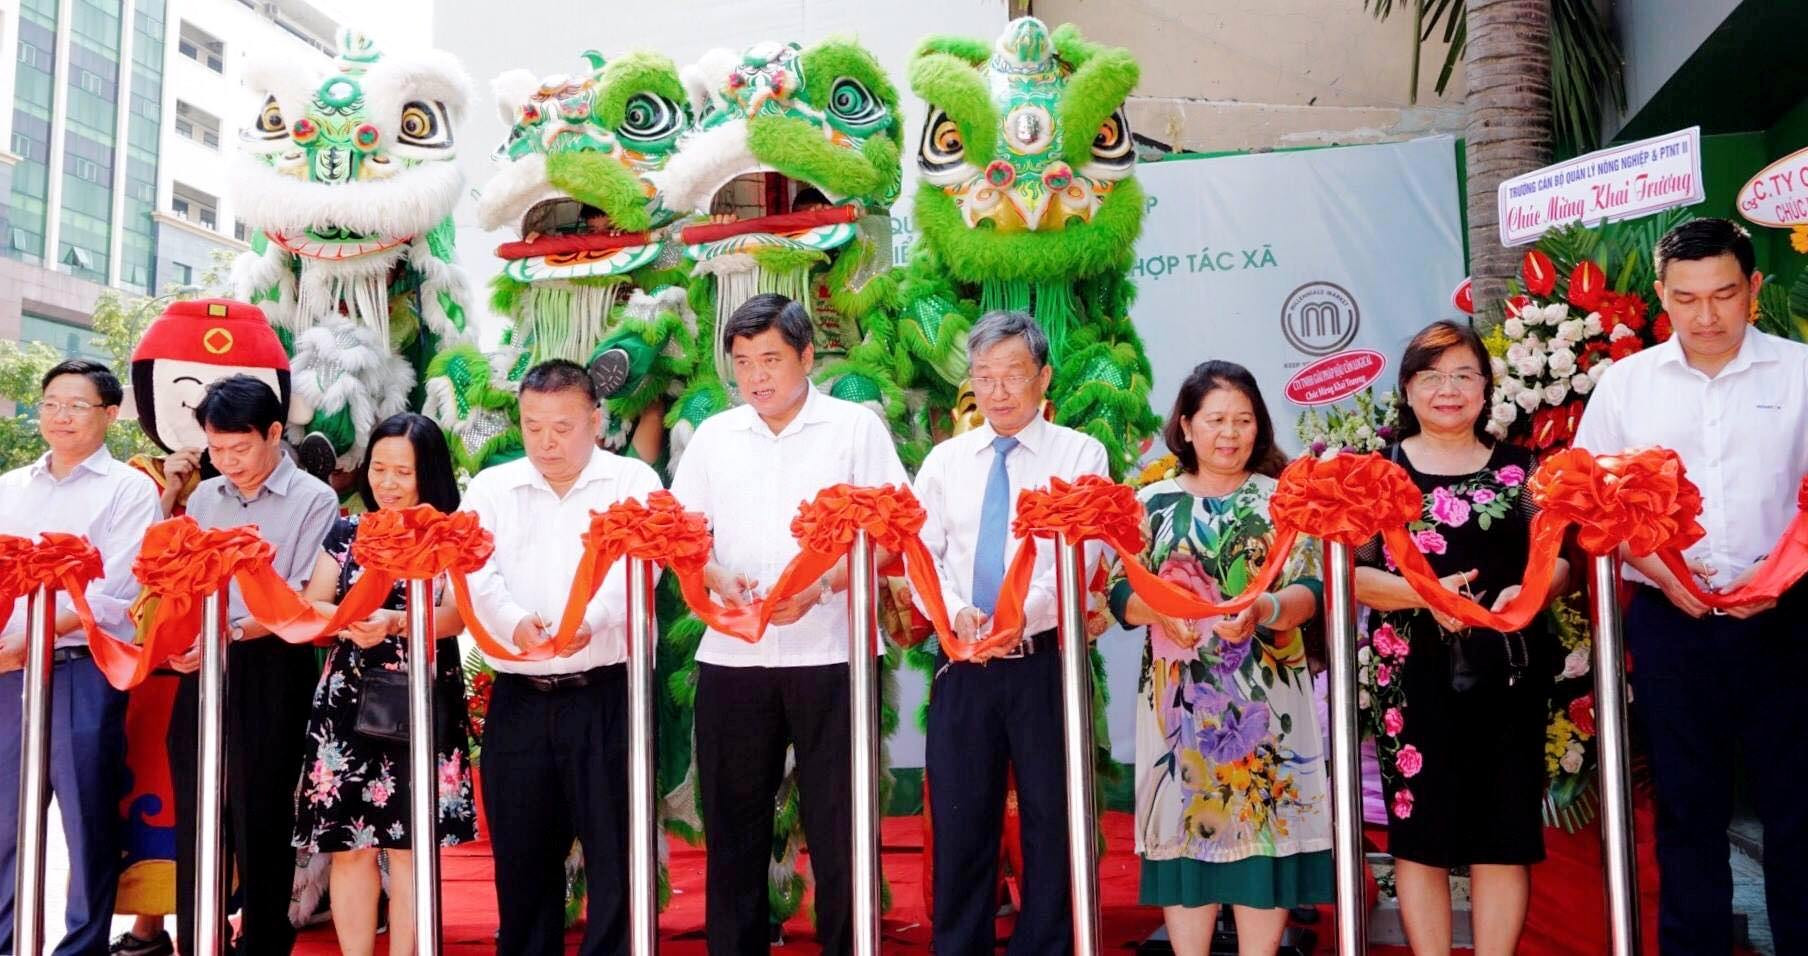 Thành phố Hồ Chí Minh có thêm điểm cung cấp nông sản sạch 